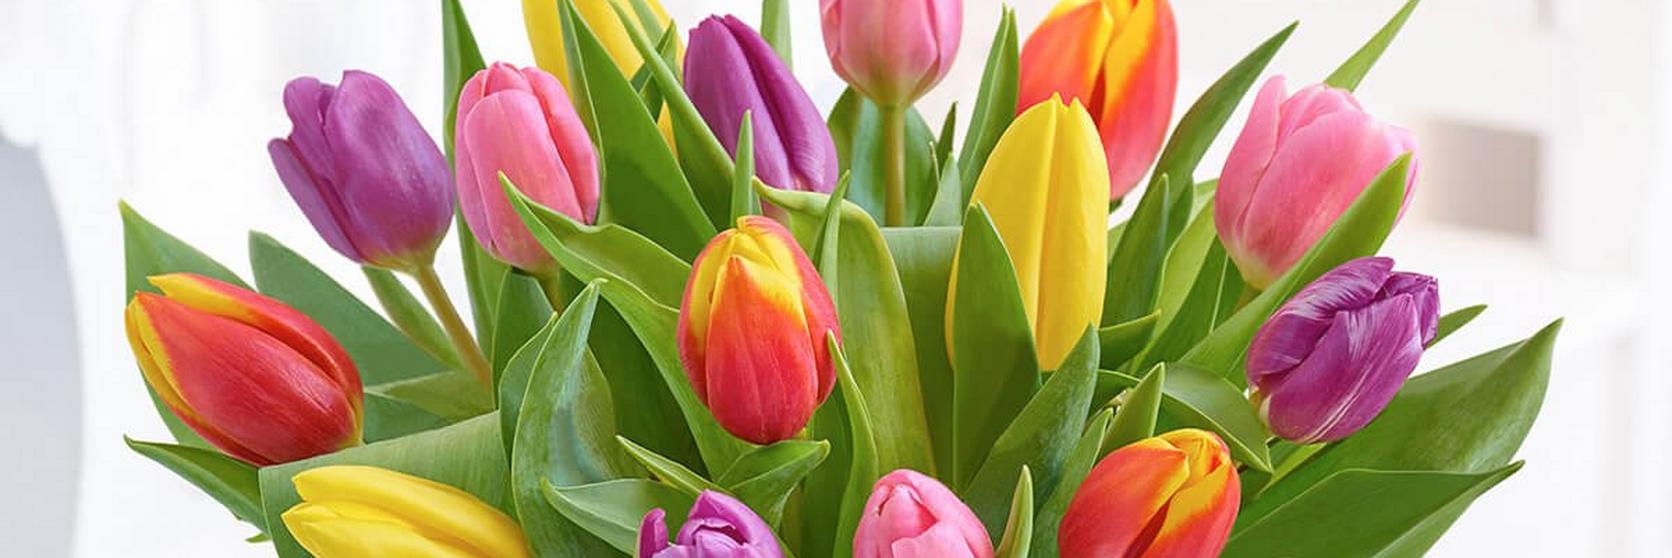 Interflora-tulips-mixed-vase